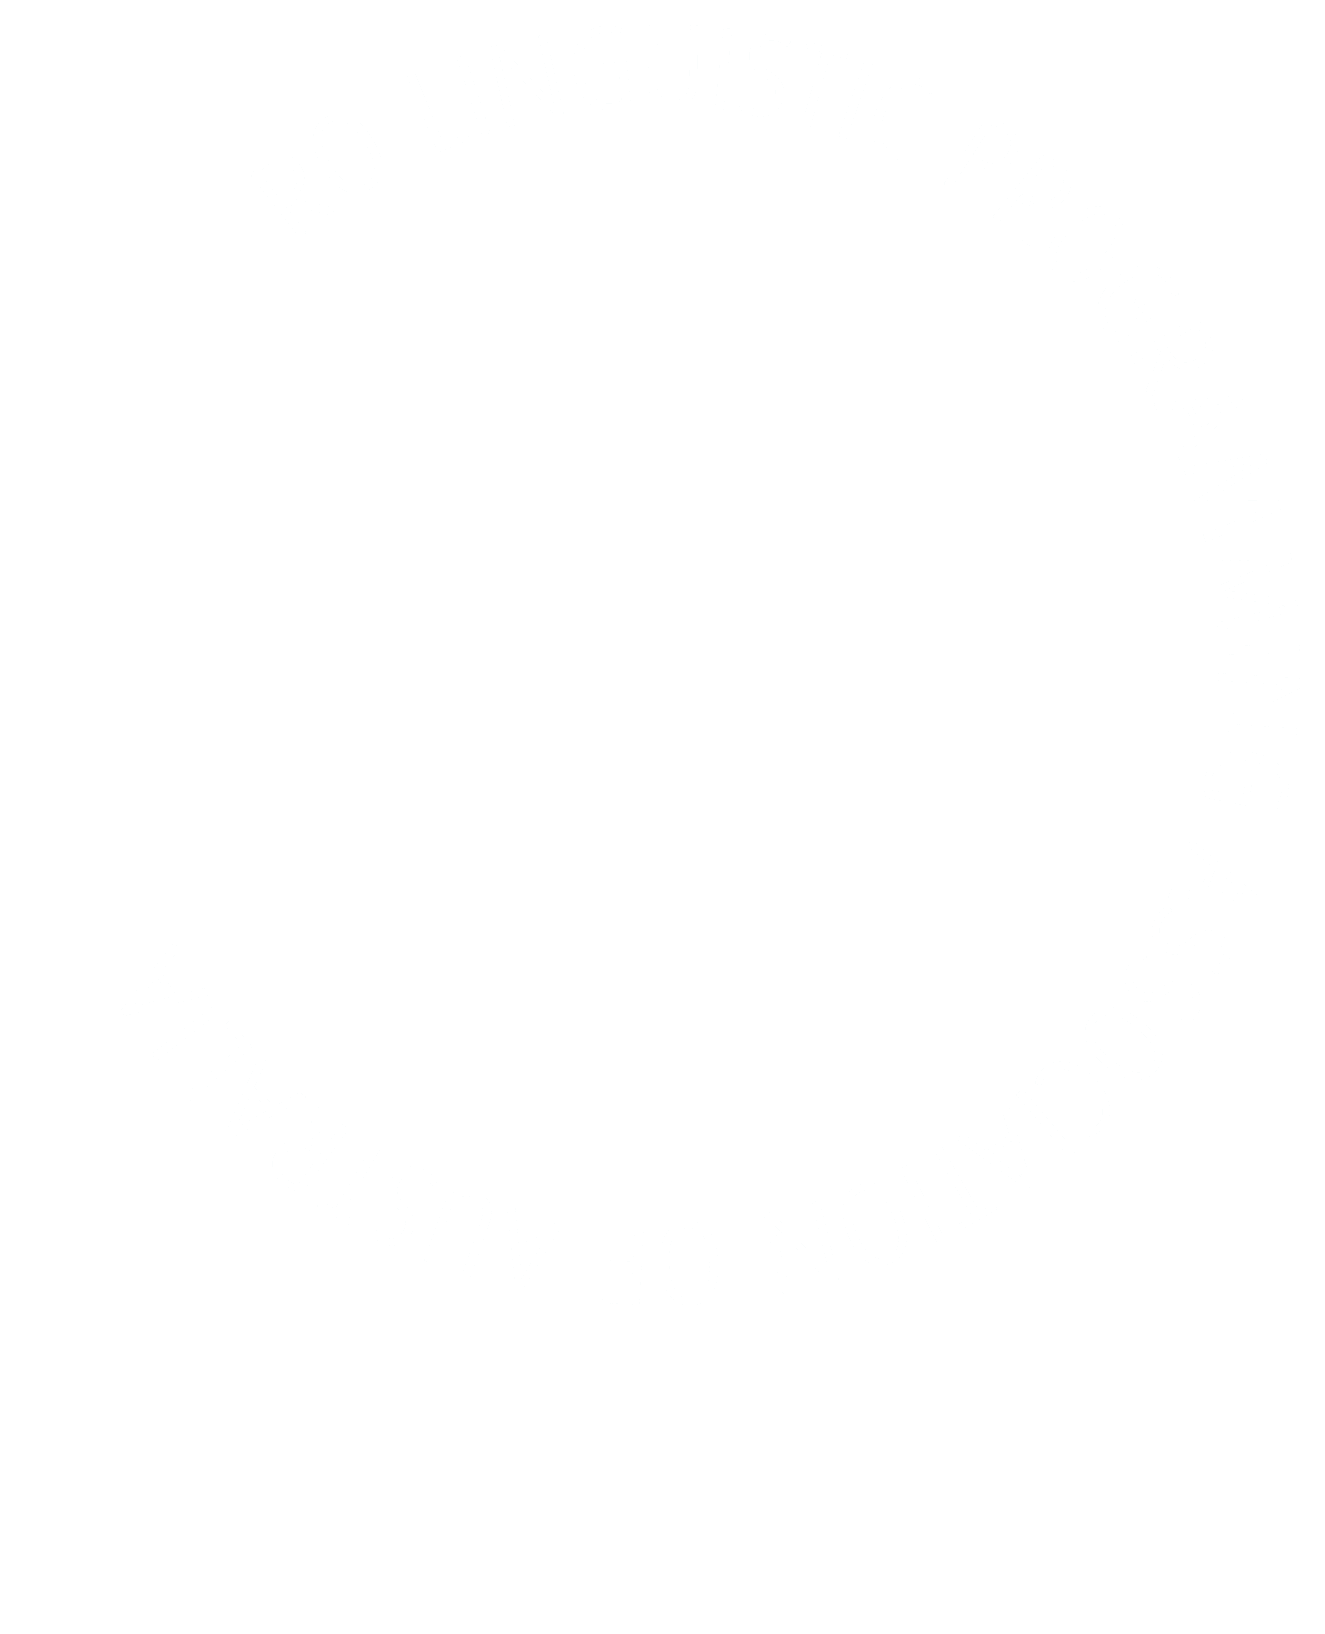 NLPAA Logo